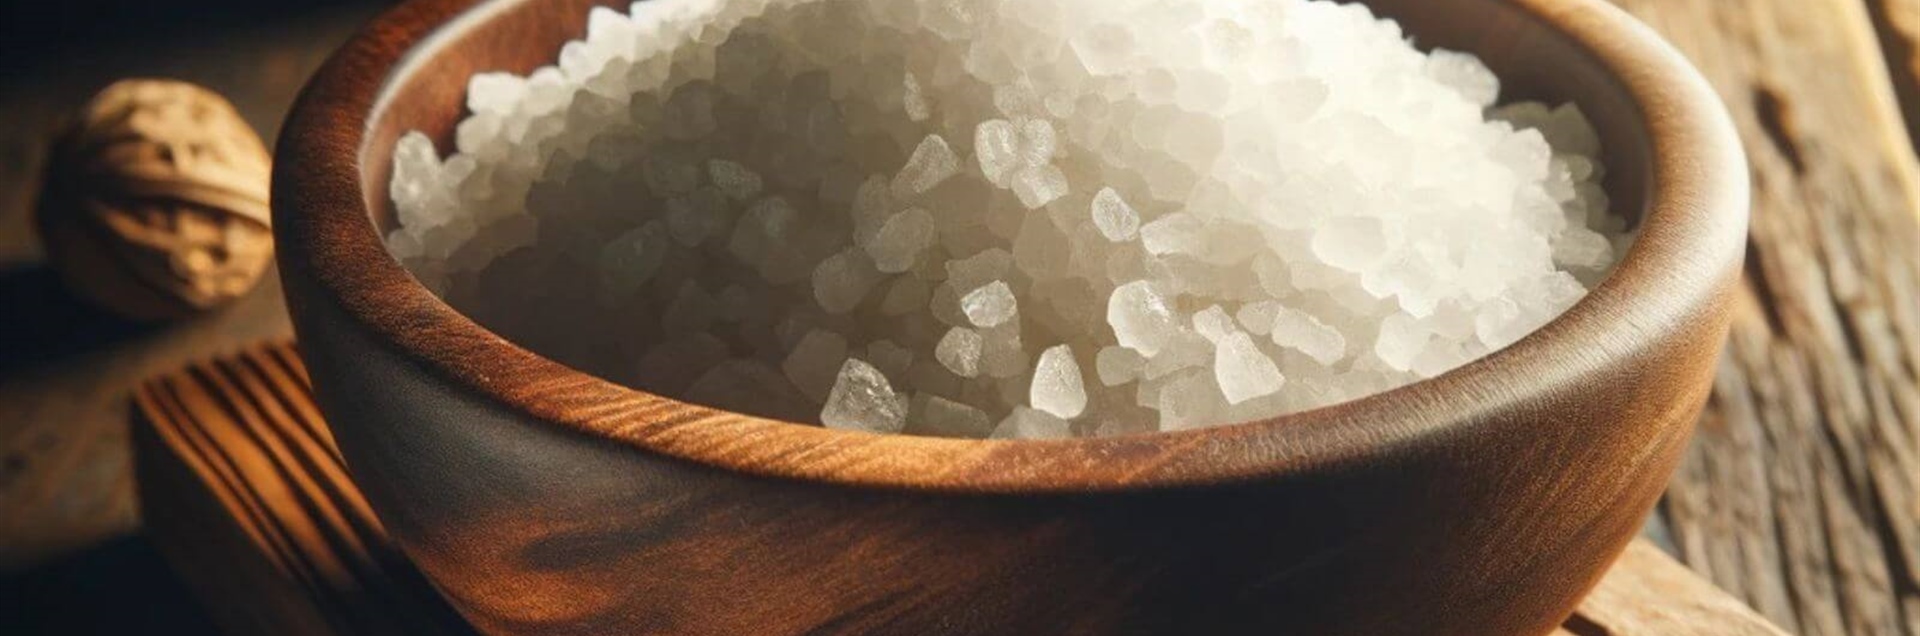 Для чего нужна крупная соль в стиральной машине?